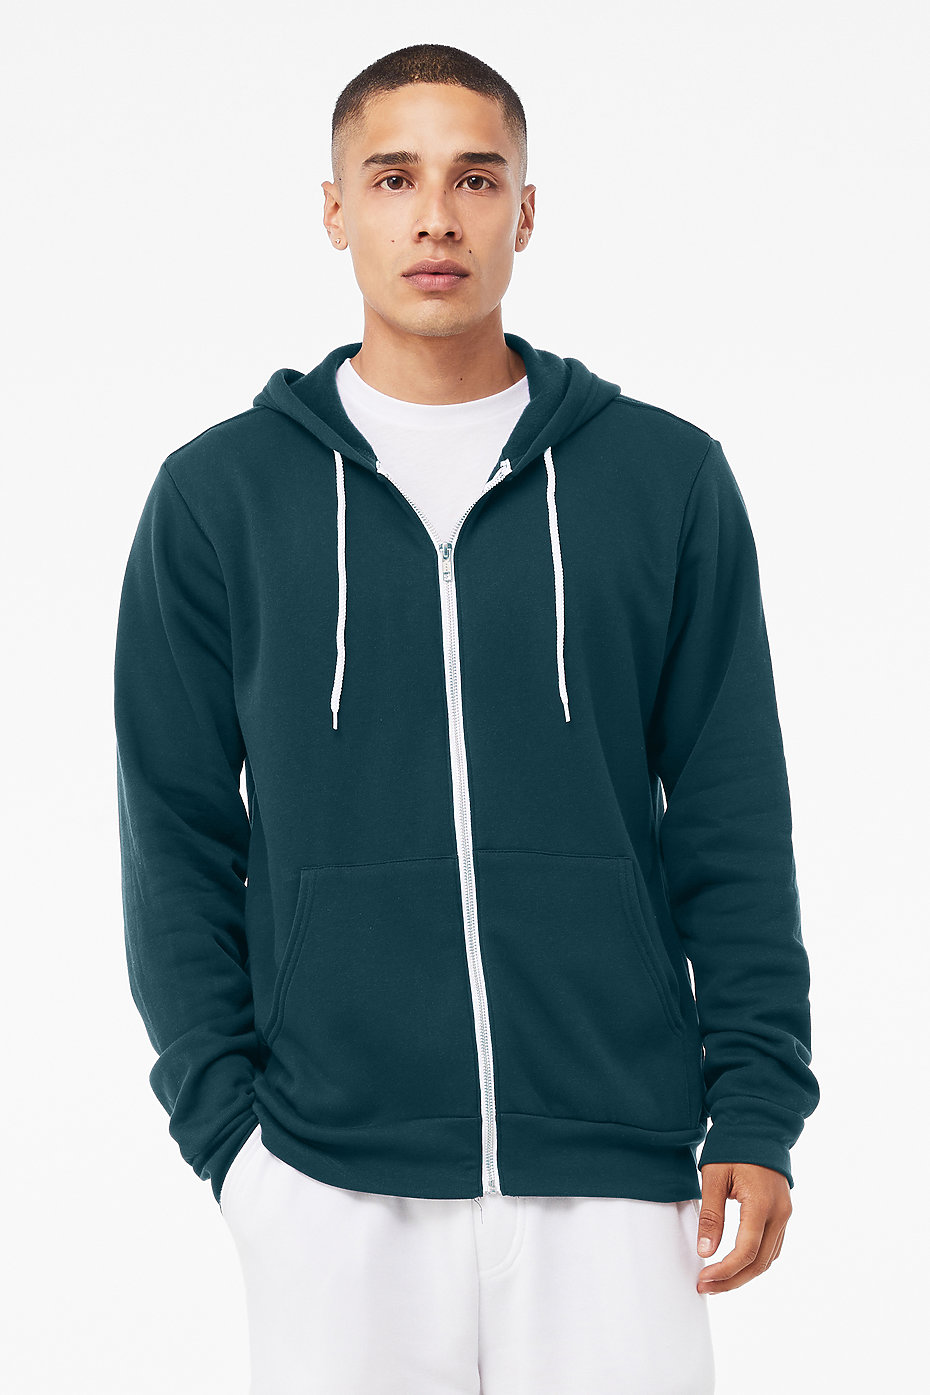 Unisex Poly-Cotton Fleece Full-Zip Hooded Sweatshirt XS YELLOW